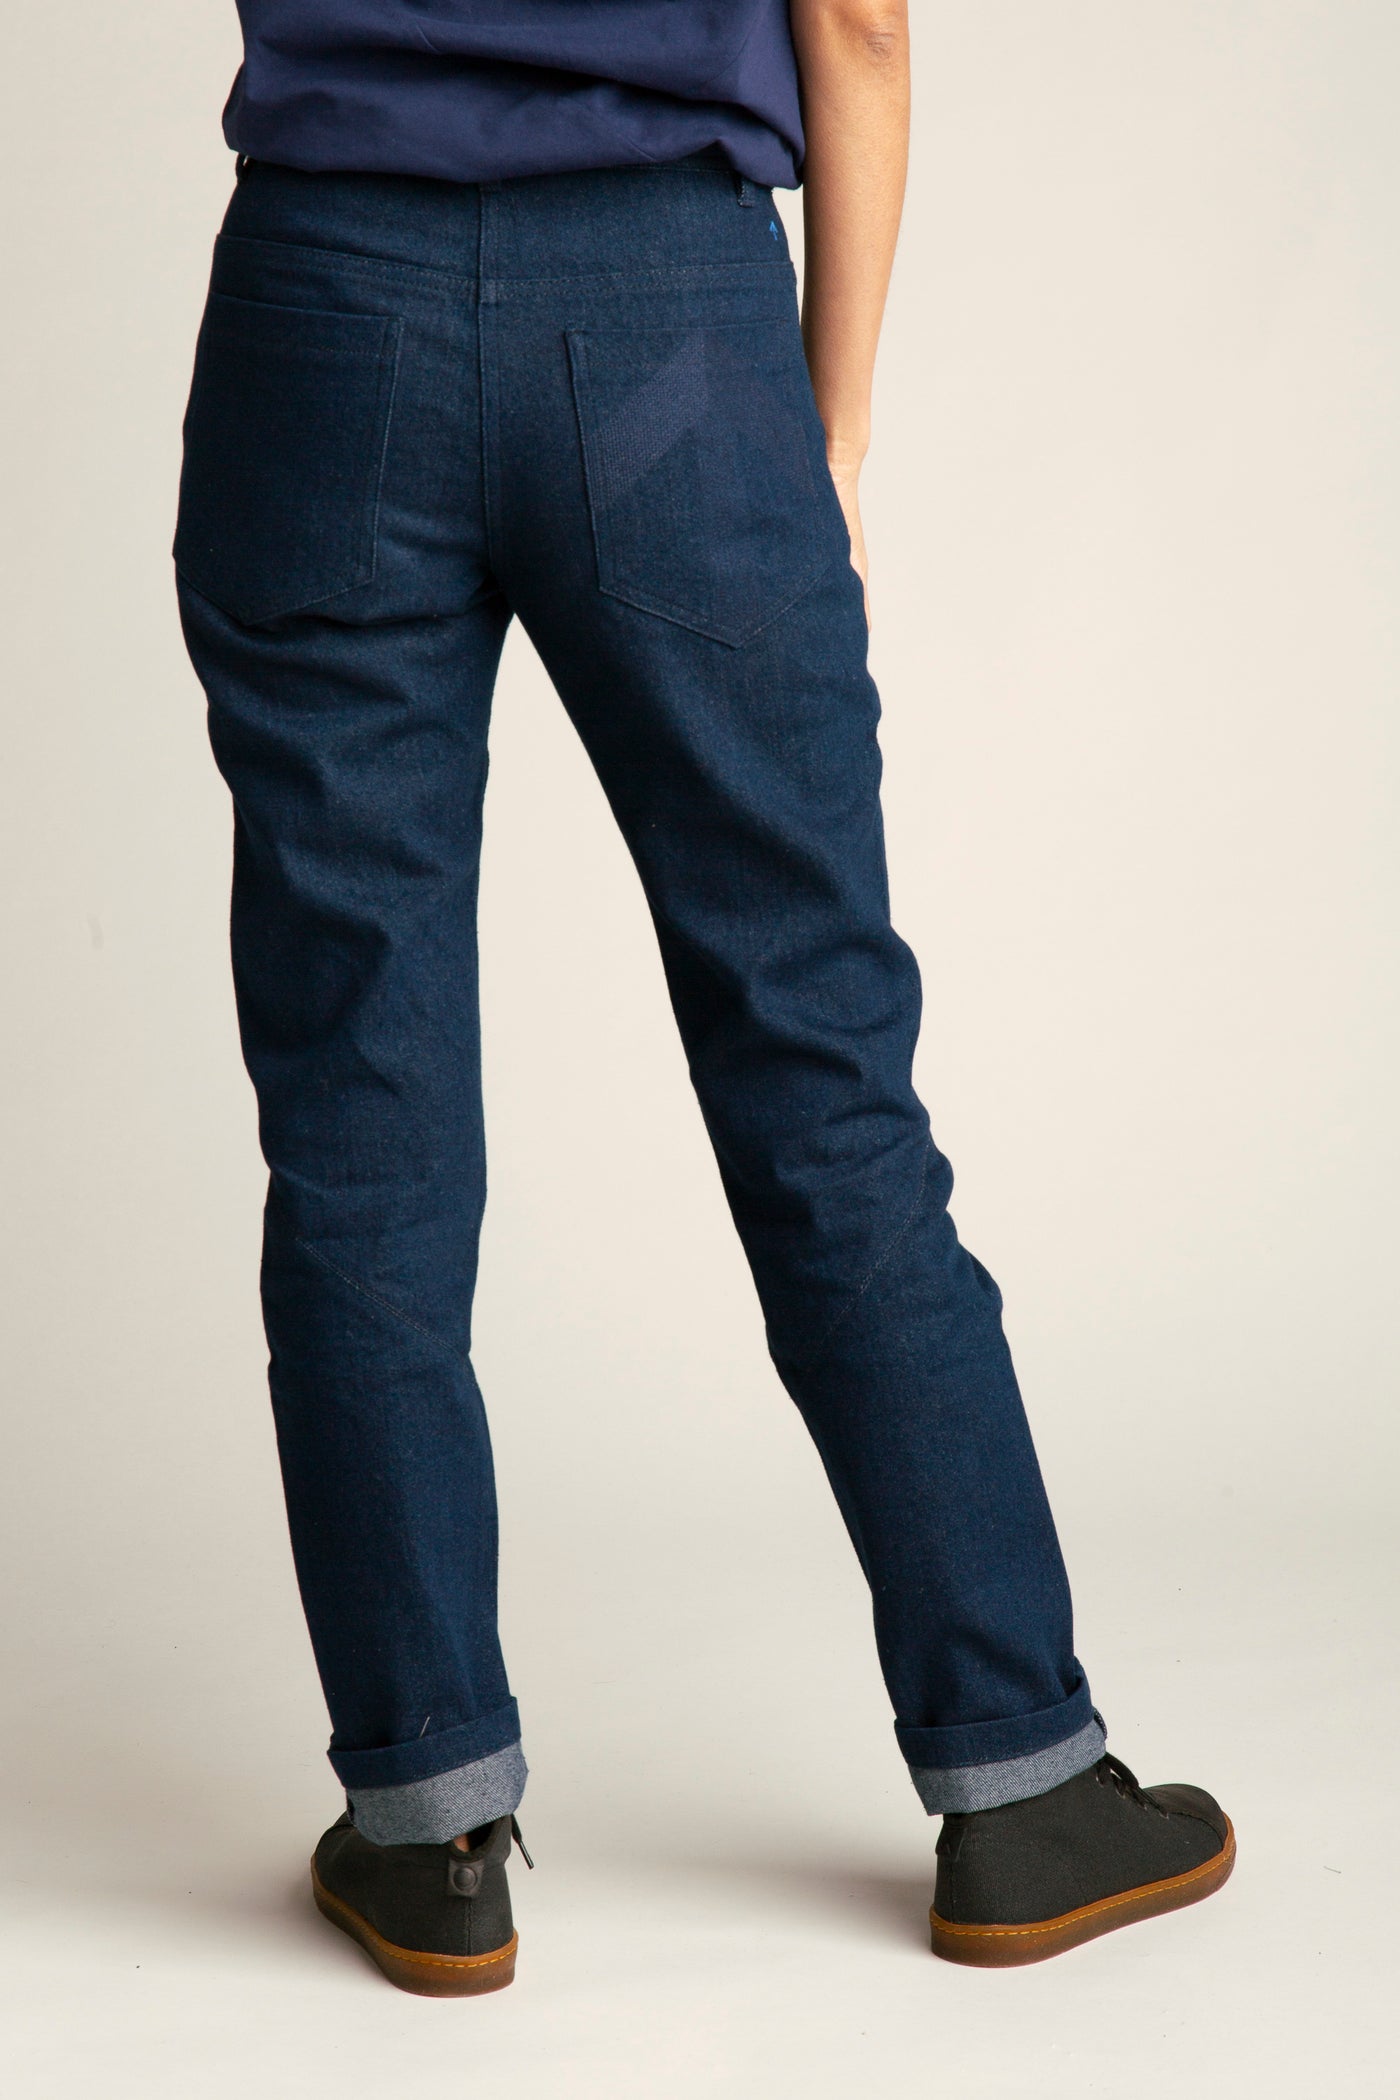 Jeans ohne Stretch für Damen | Blau